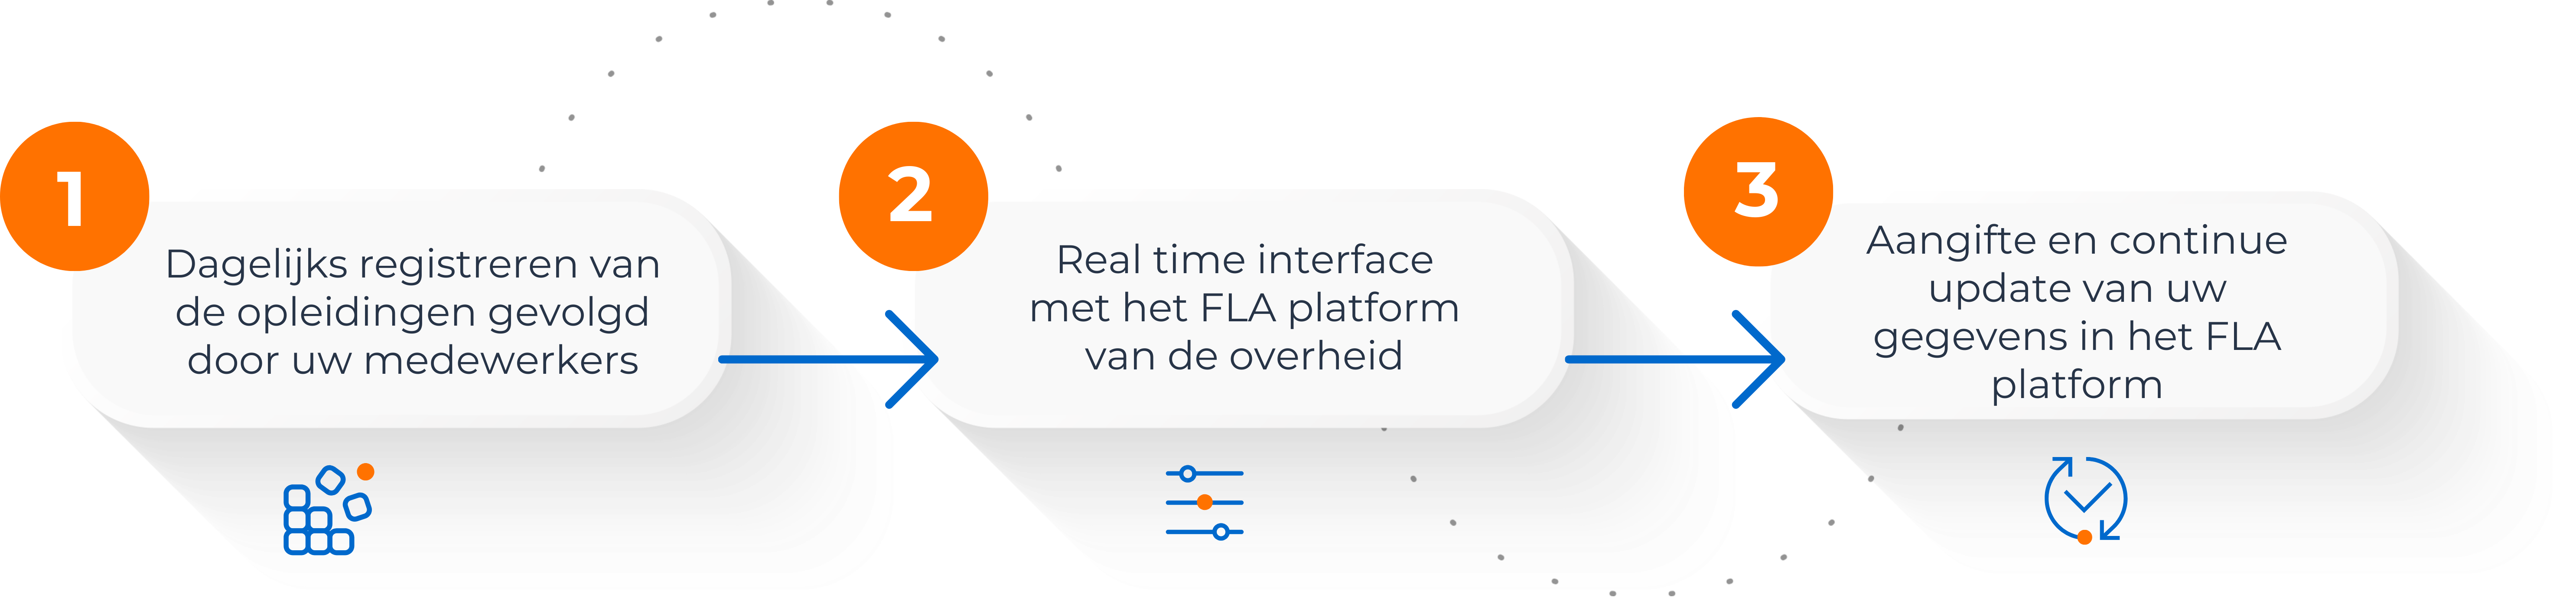 1 - Dagelijkse verzameling en registratie van de door uw medewerkers gevolgde trainingen 2 - Real-time interface met het FLA-platform van de overheid 3 - Continue verklaringen en updates van uw gegevens op het FLA-platform